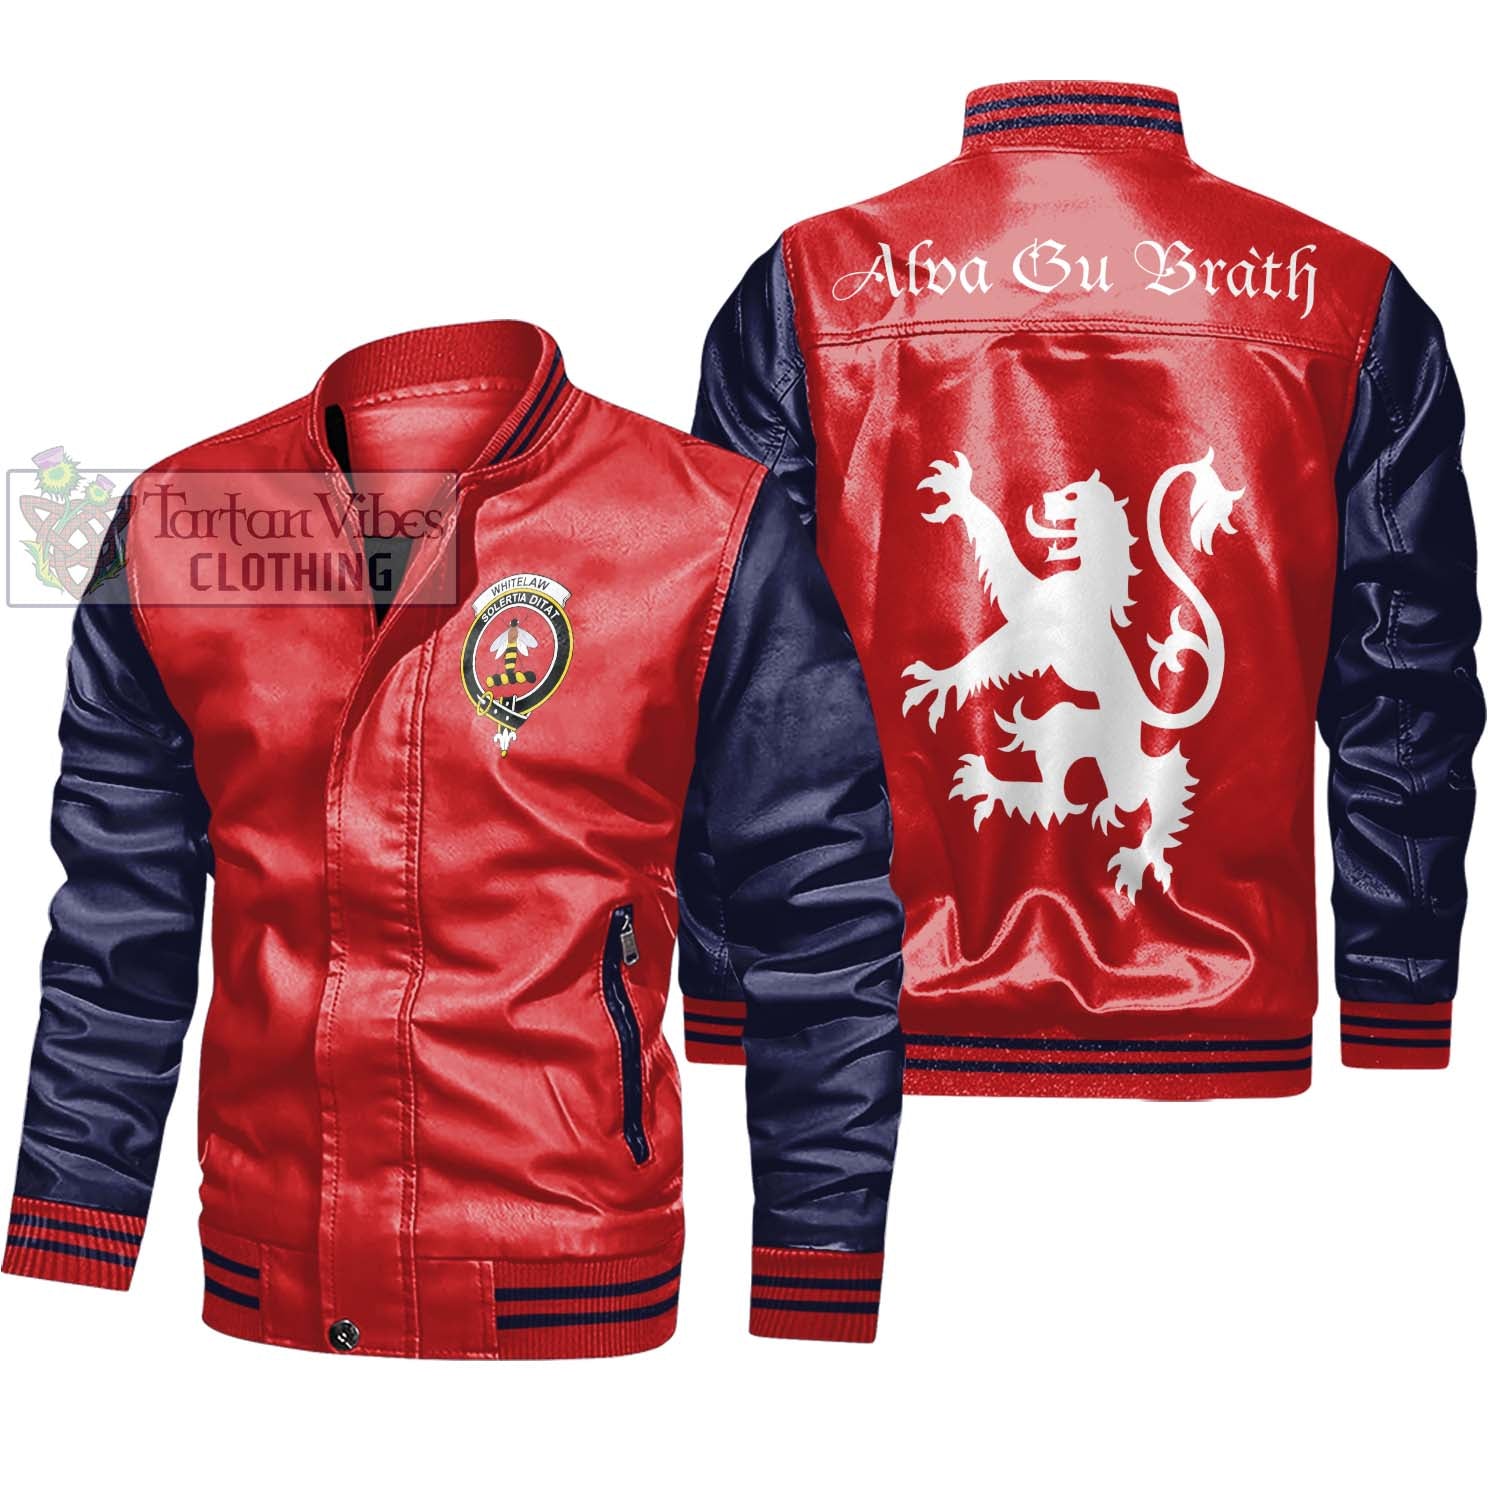 Tartan Vibes Clothing Whitelaw Family Crest Leather Bomber Jacket Lion Rampant Alba Gu Brath Style